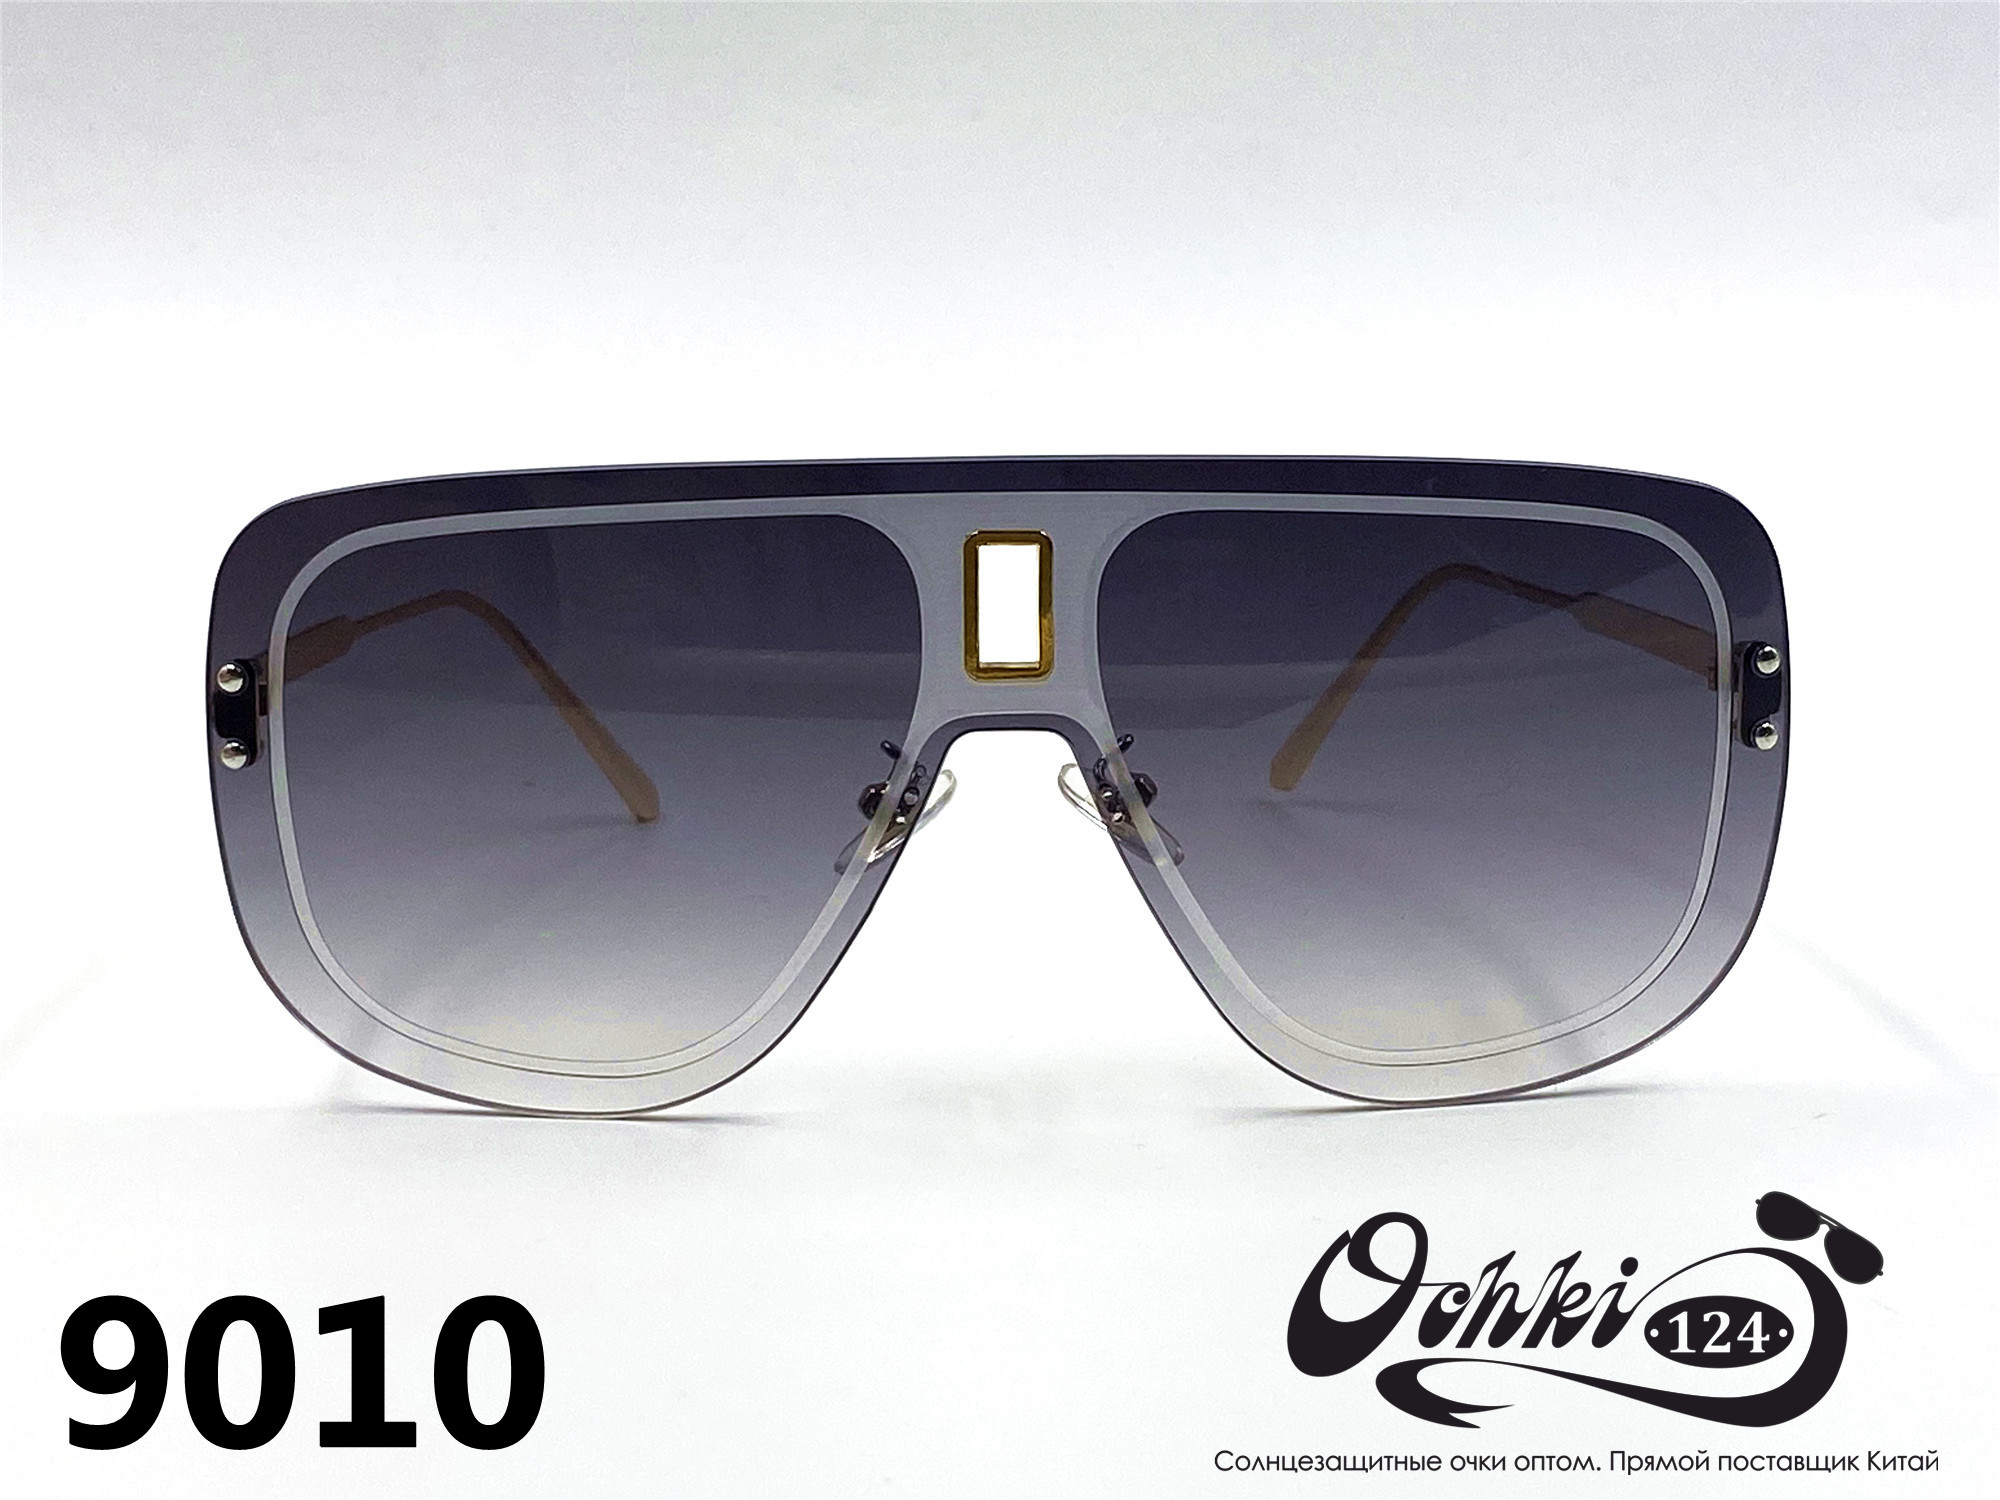  Солнцезащитные очки картинка 2022 Женские Пластик Авиаторы Caipai 9010-3 